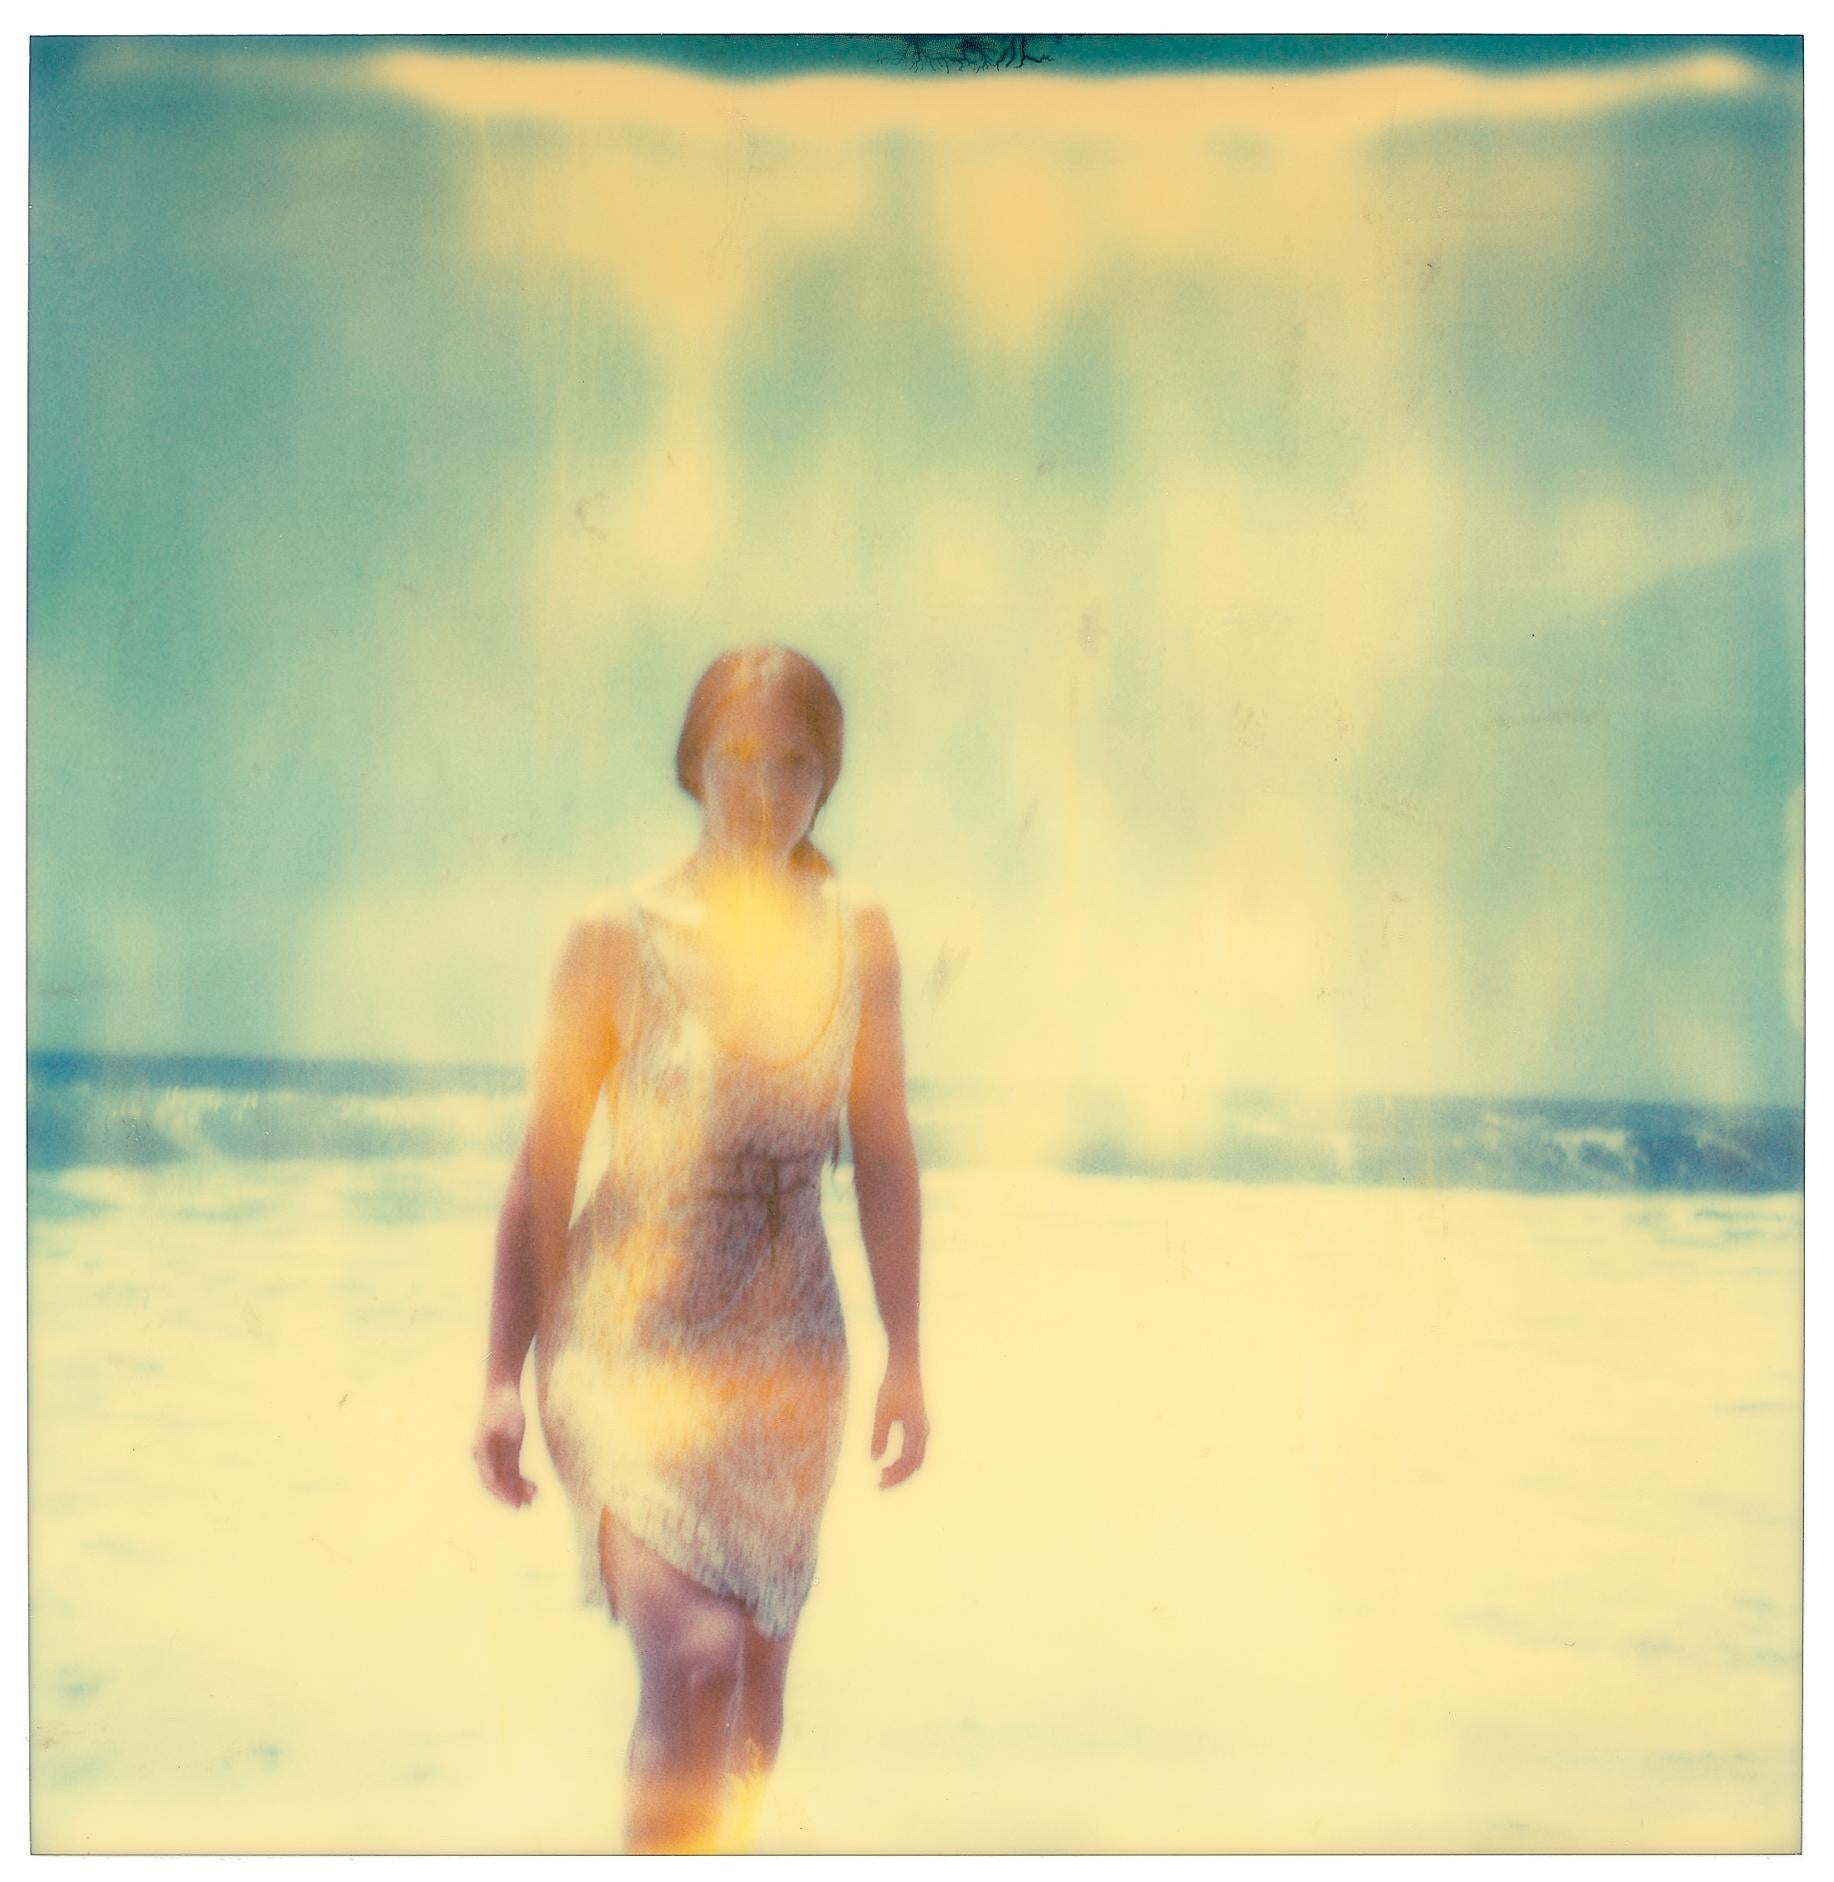 Woman in Malibu - Polaroid, analog, 21st Century, Woman - Beige Landscape Photograph by Stefanie Schneider